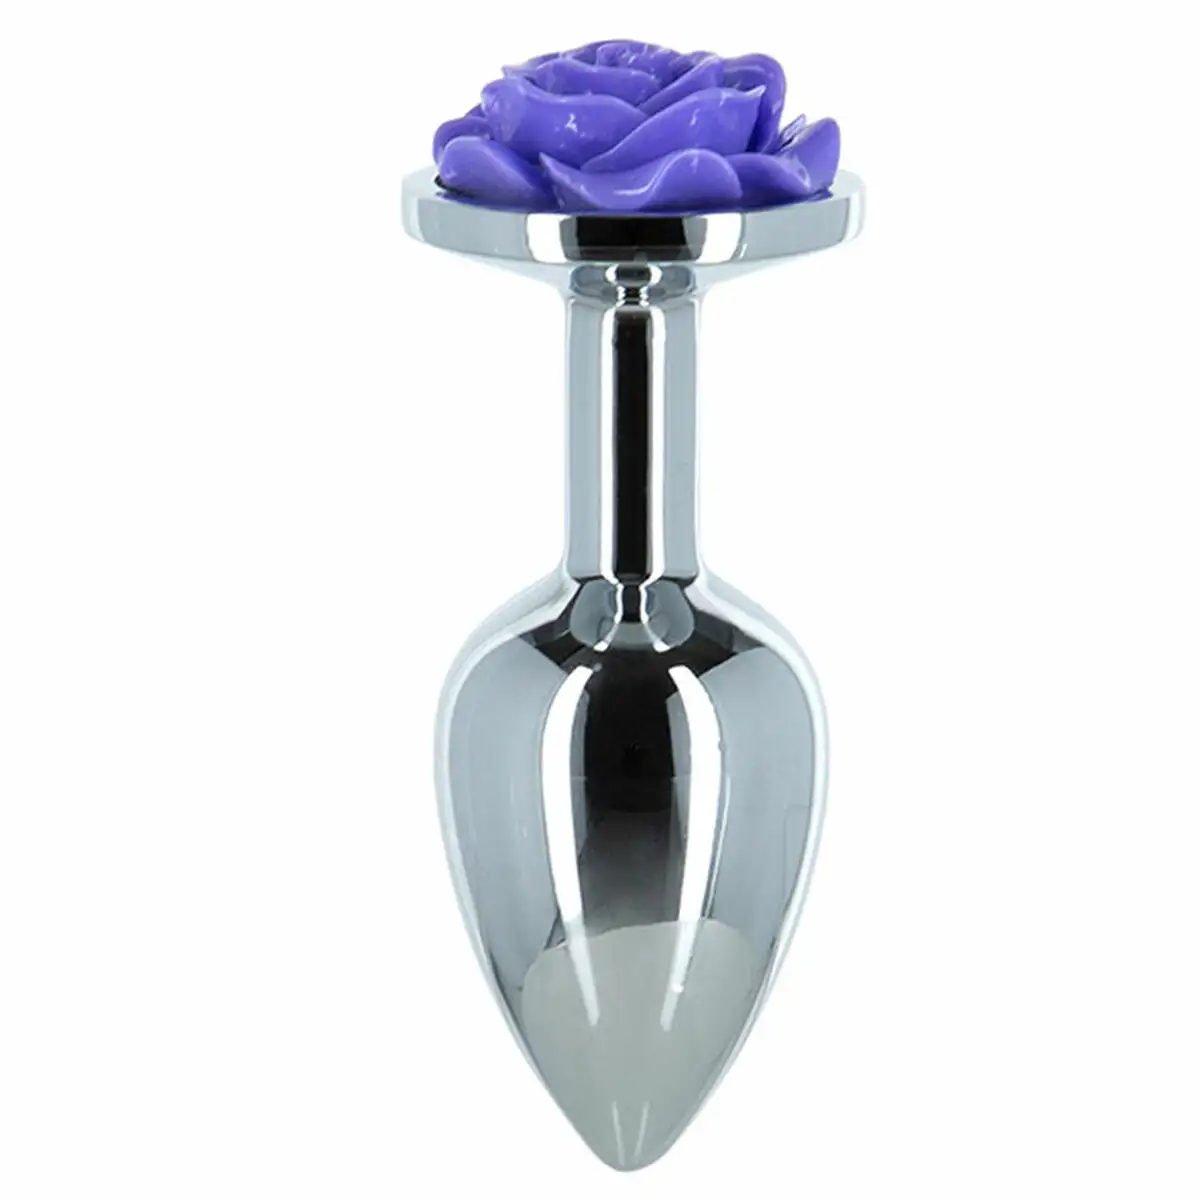 Plug anal lux metal purple rose 5 71 cm _8564. DIAYTAR SENEGAL - Où Choisir est un Plaisir. Explorez notre boutique en ligne et choisissez parmi des produits de qualité qui satisferont vos besoins et vos goûts.